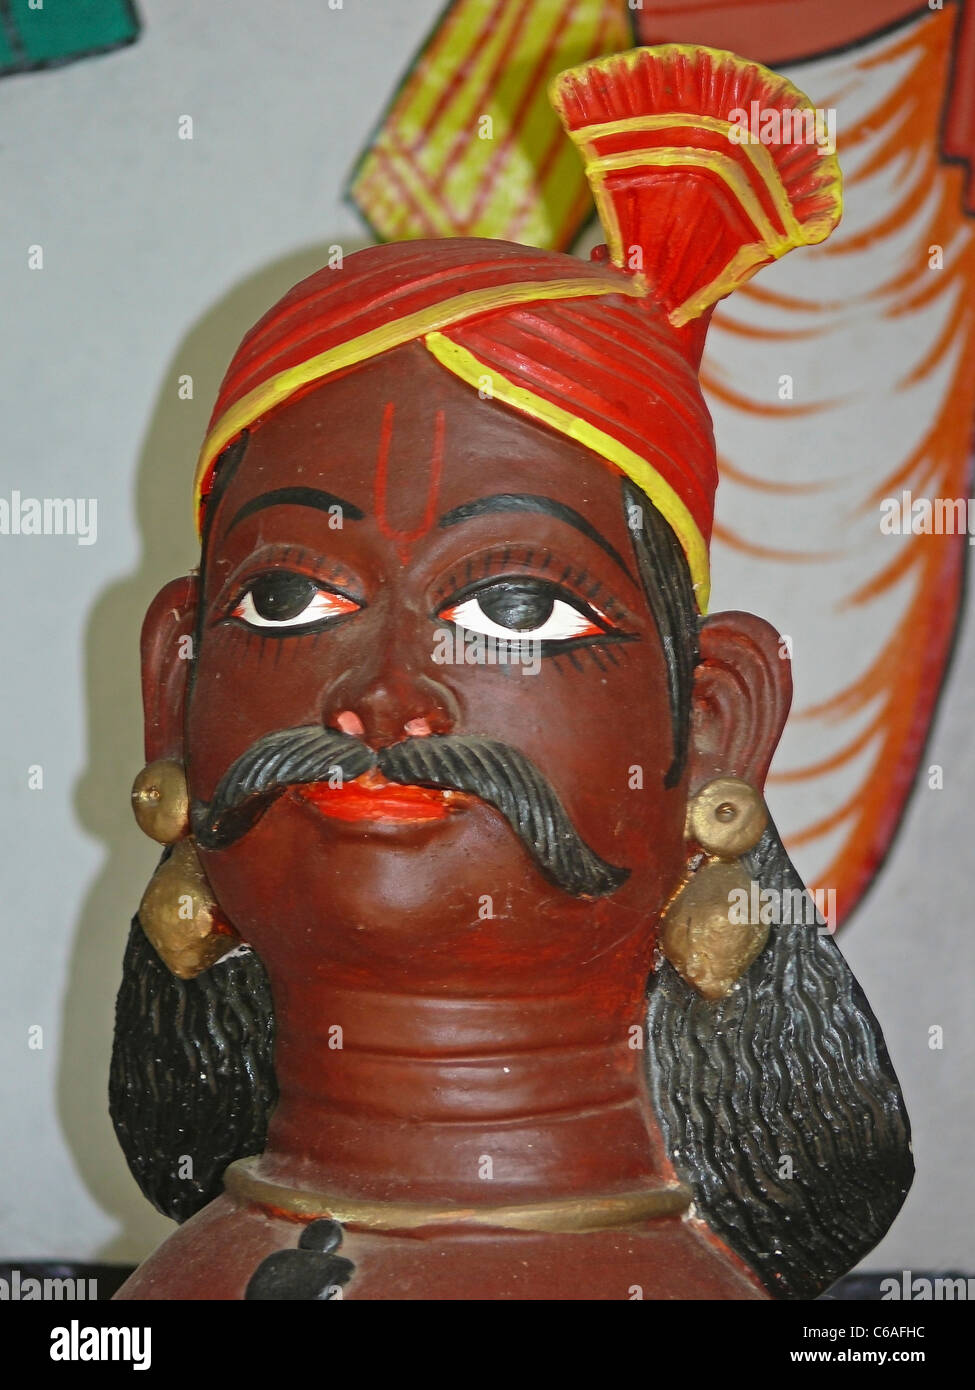 Estatura representan una historia mítica de Sailesh & Motiram, Darbhanga, Bihar, India Foto de stock